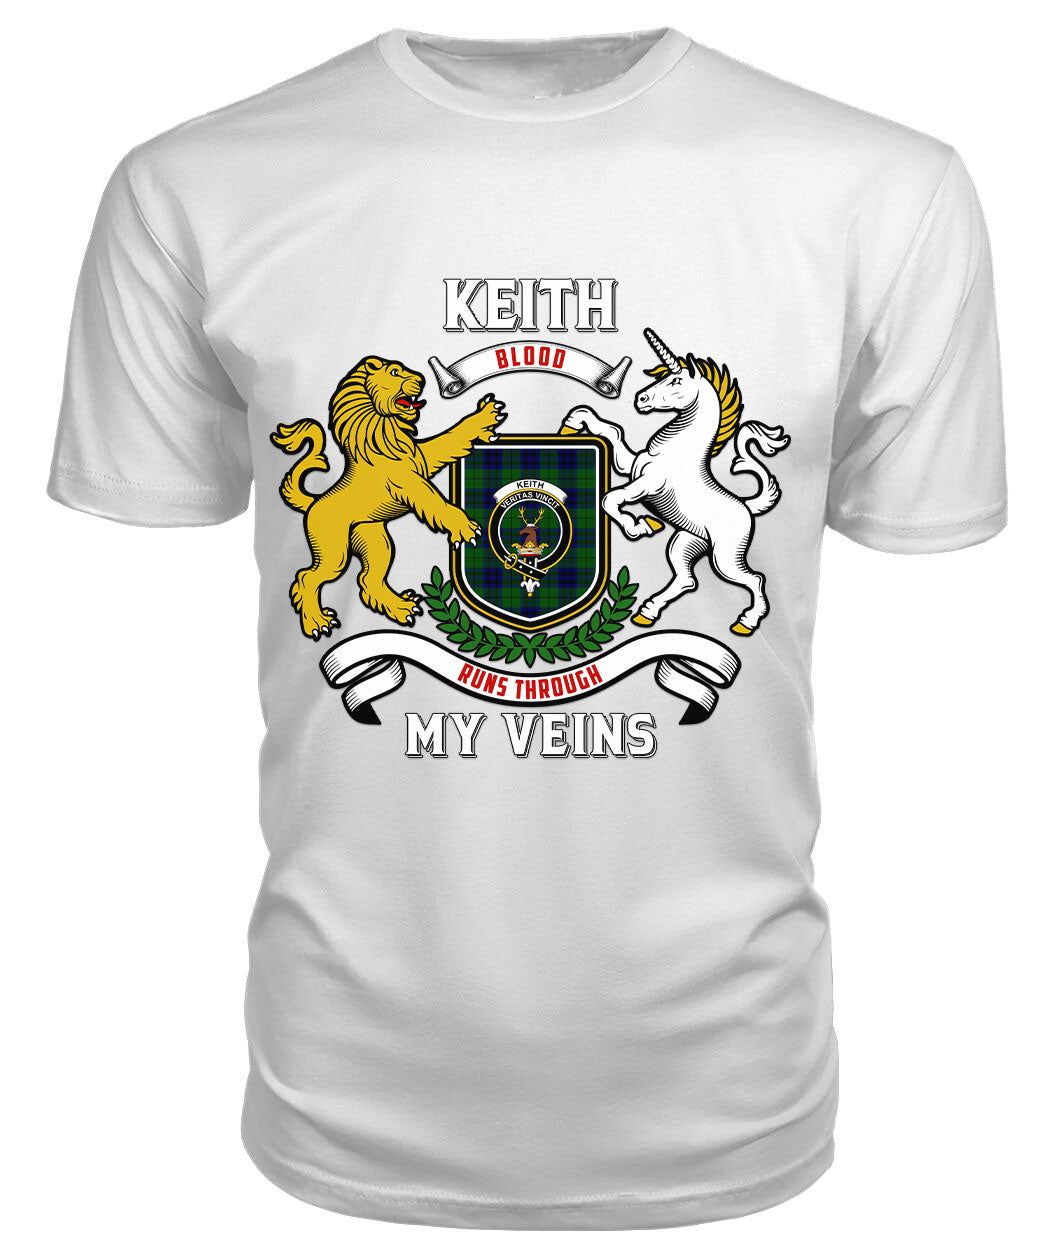 Keith Modern Tartan Crest 2D T-shirt - Blood Runs Through My Veins Style